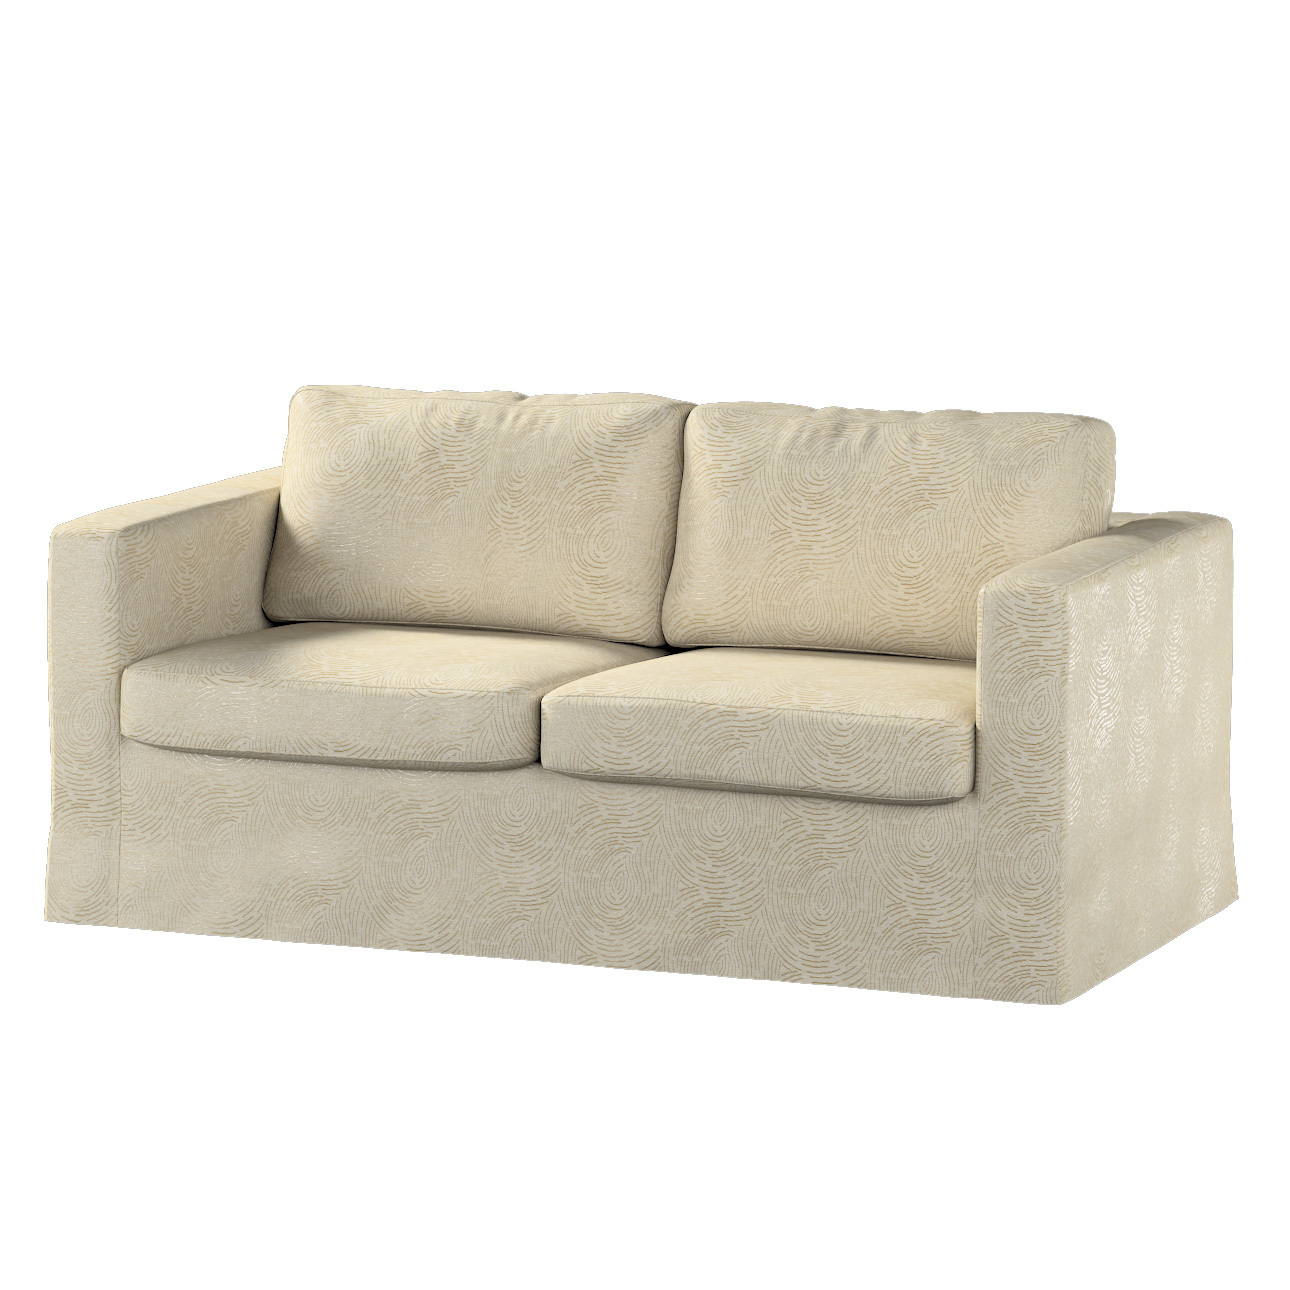 Bezug für Karlstad 2-Sitzer Sofa nicht ausklappbar, lang, beige-golden, Sof günstig online kaufen